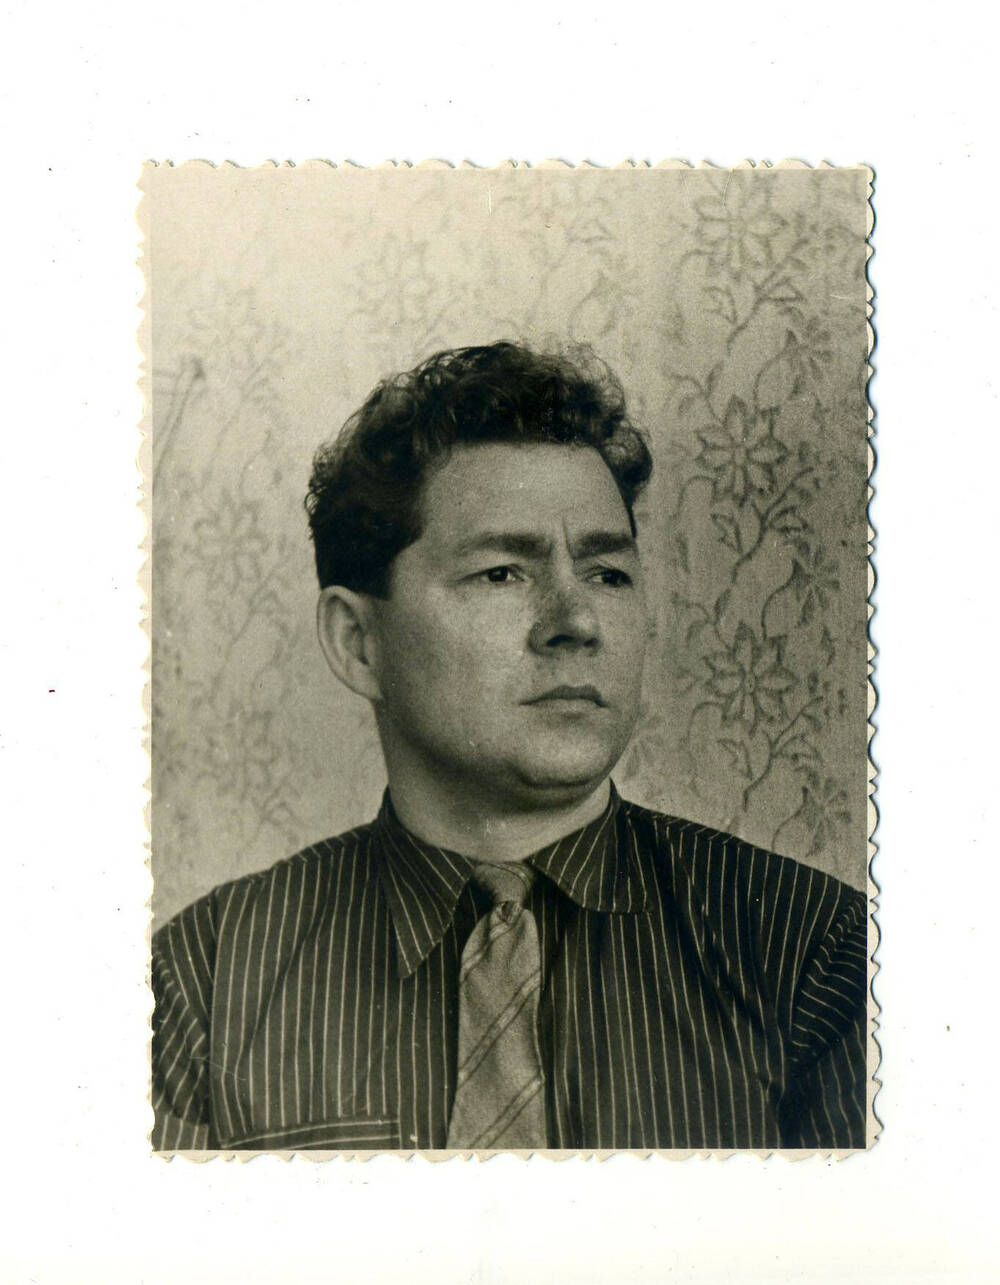 Фото 1960г.  Алексей Усынин, секретаря  Черемховского  РК ВЛКСМ нач. 1950-х гг.